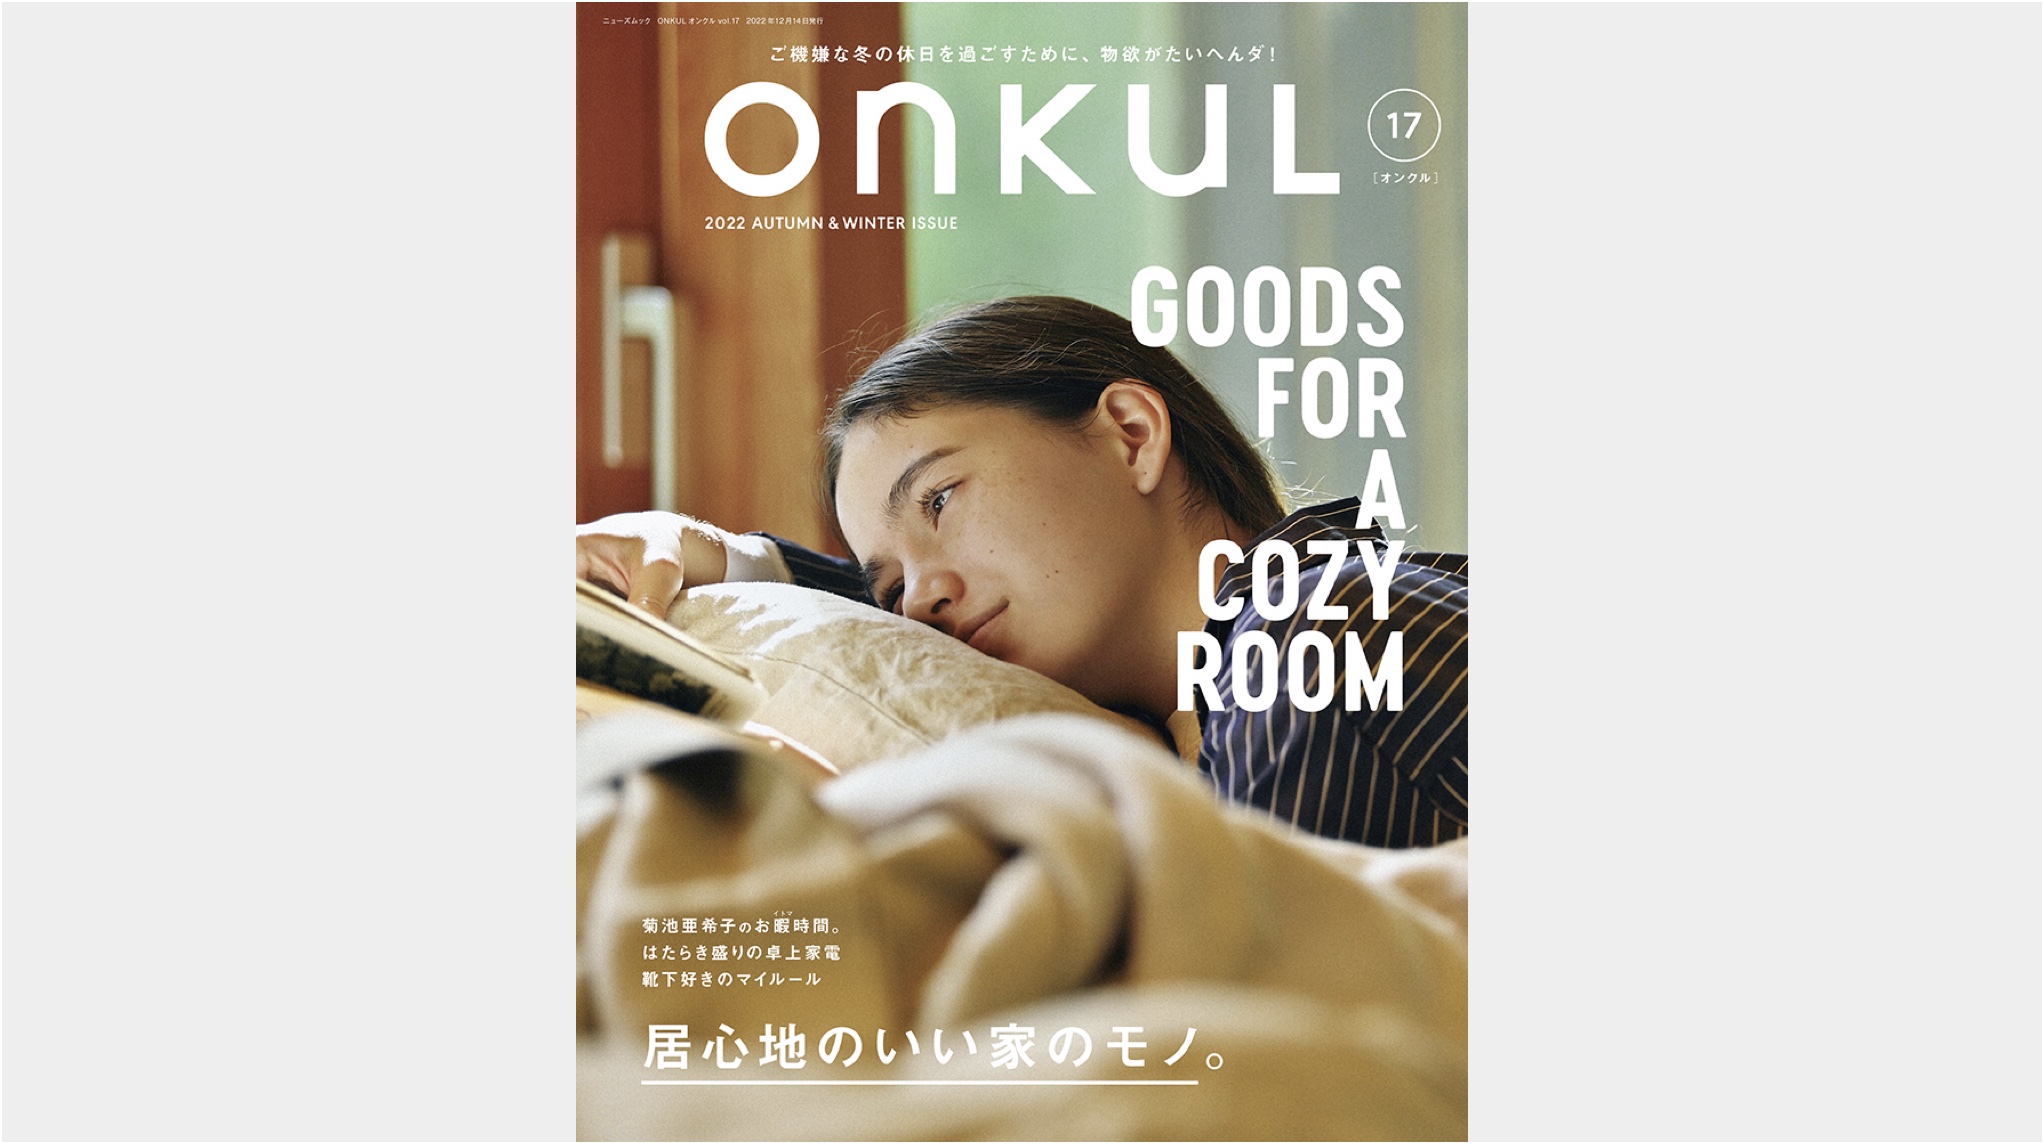 【メディア掲載情報】10月31日発売「ONKUL」vol.17 記事掲載のお知らせ